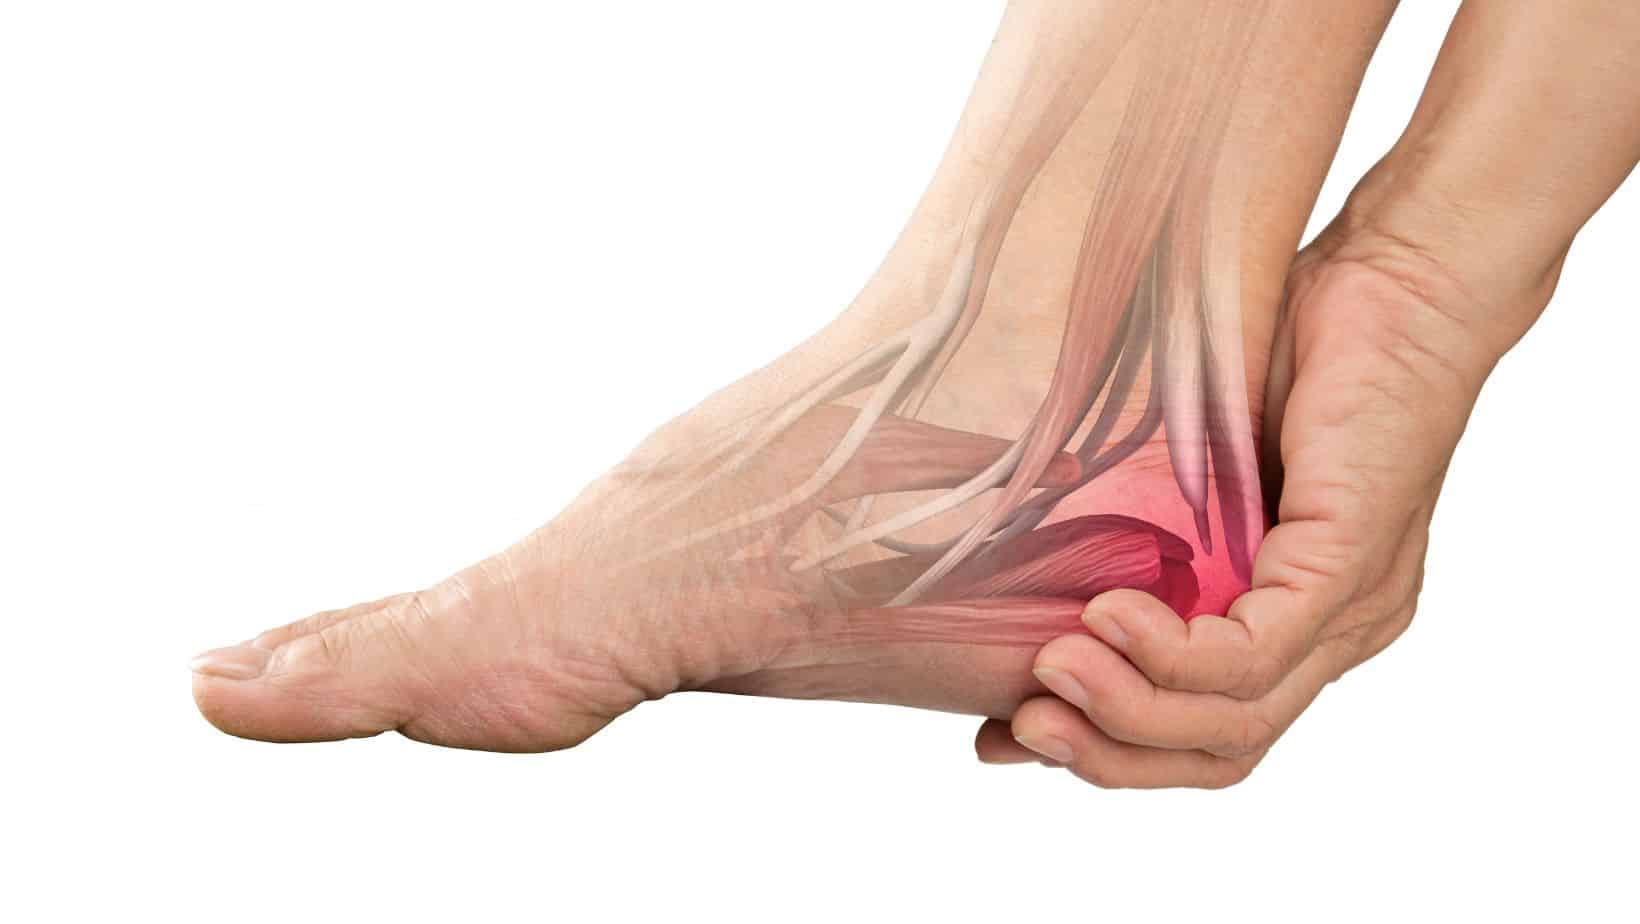 Bruised Heel Symptoms